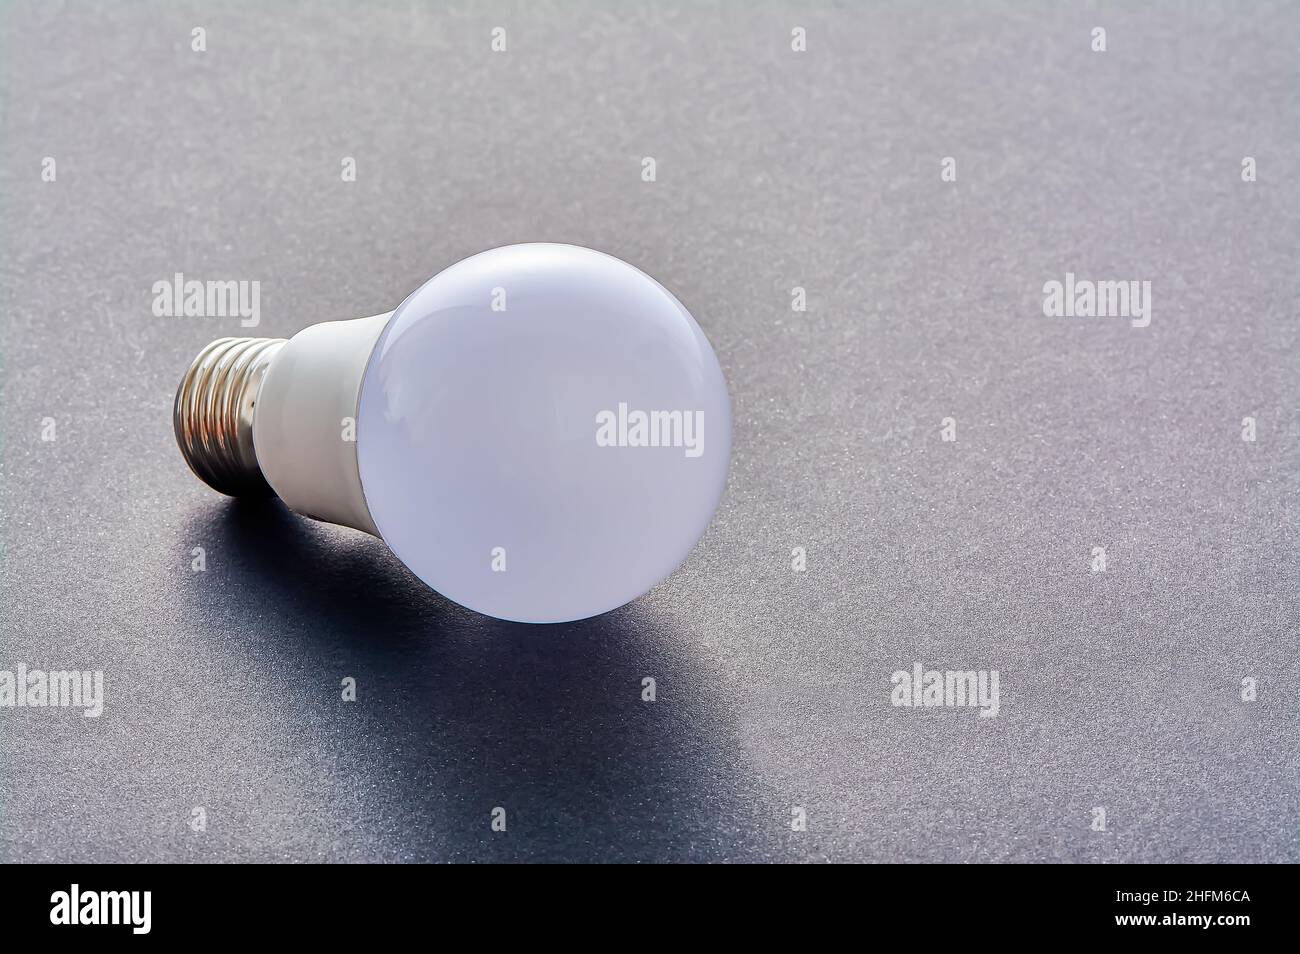 Una lampada LED bianca con base E27 giace su uno sfondo grigio Foto Stock